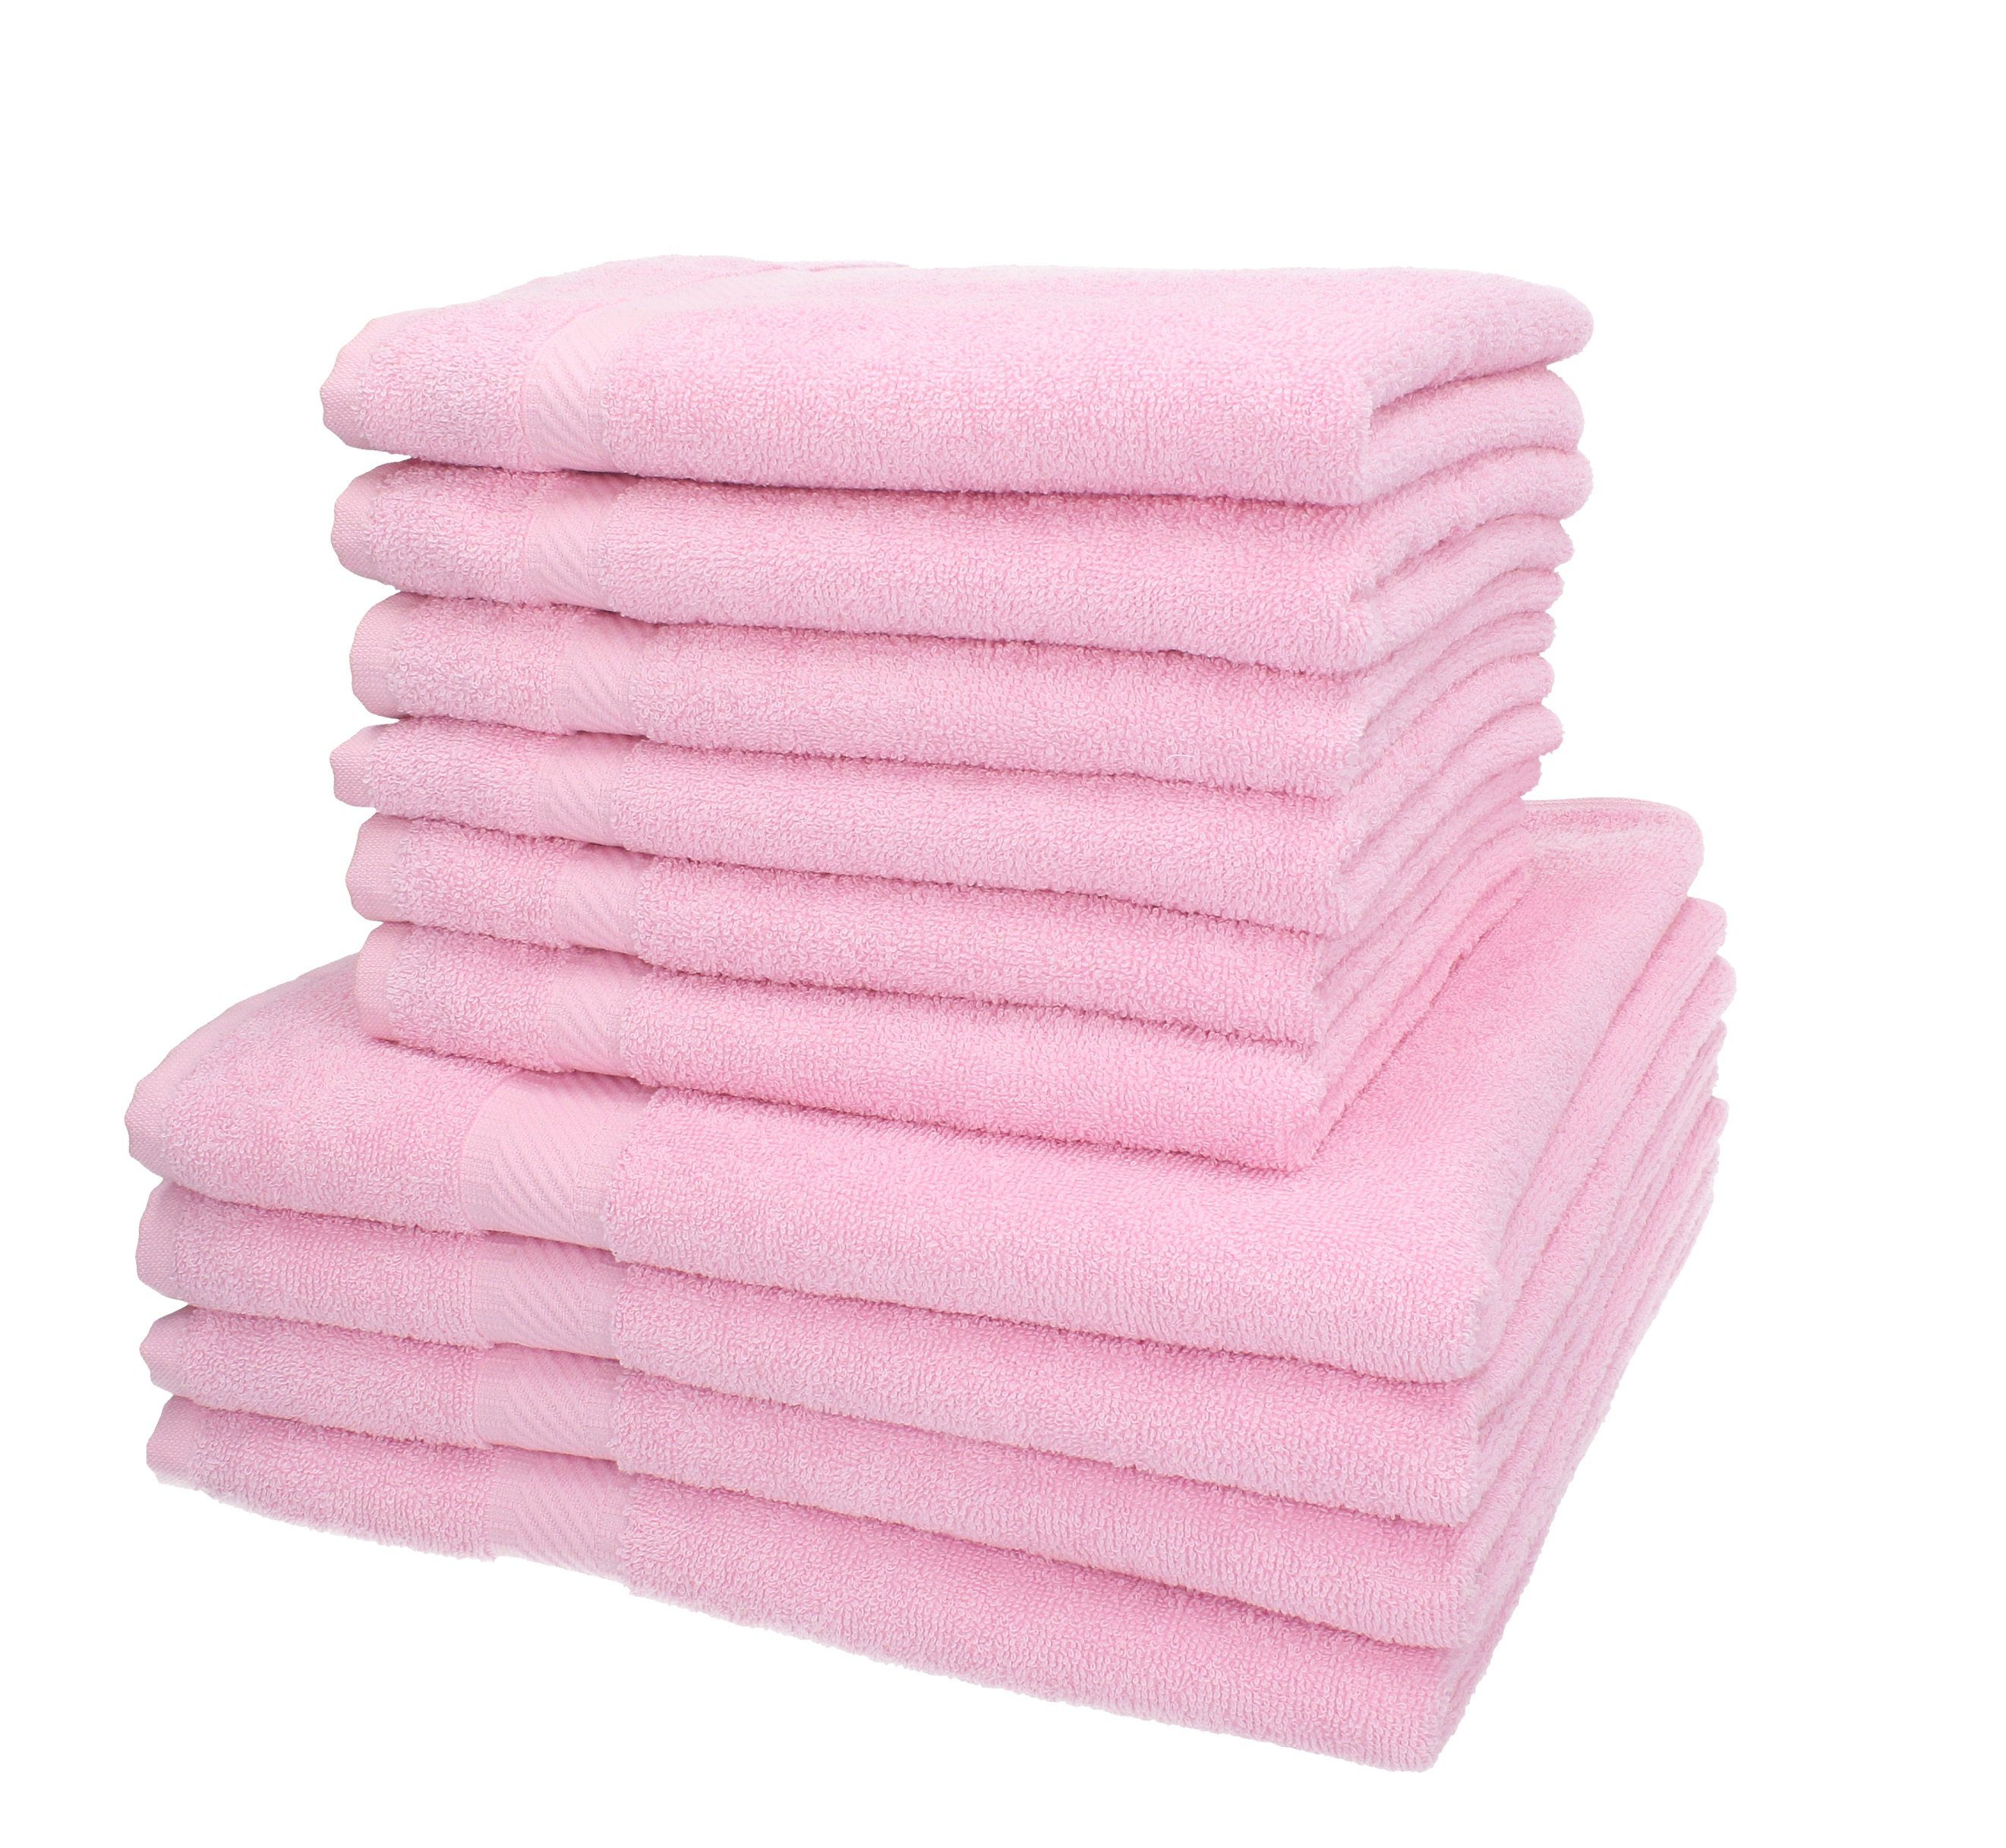 Betz Handtuch Set 10-TLG. 100% Baumwolle Handtuch-Set Farbe rosé, Palermo